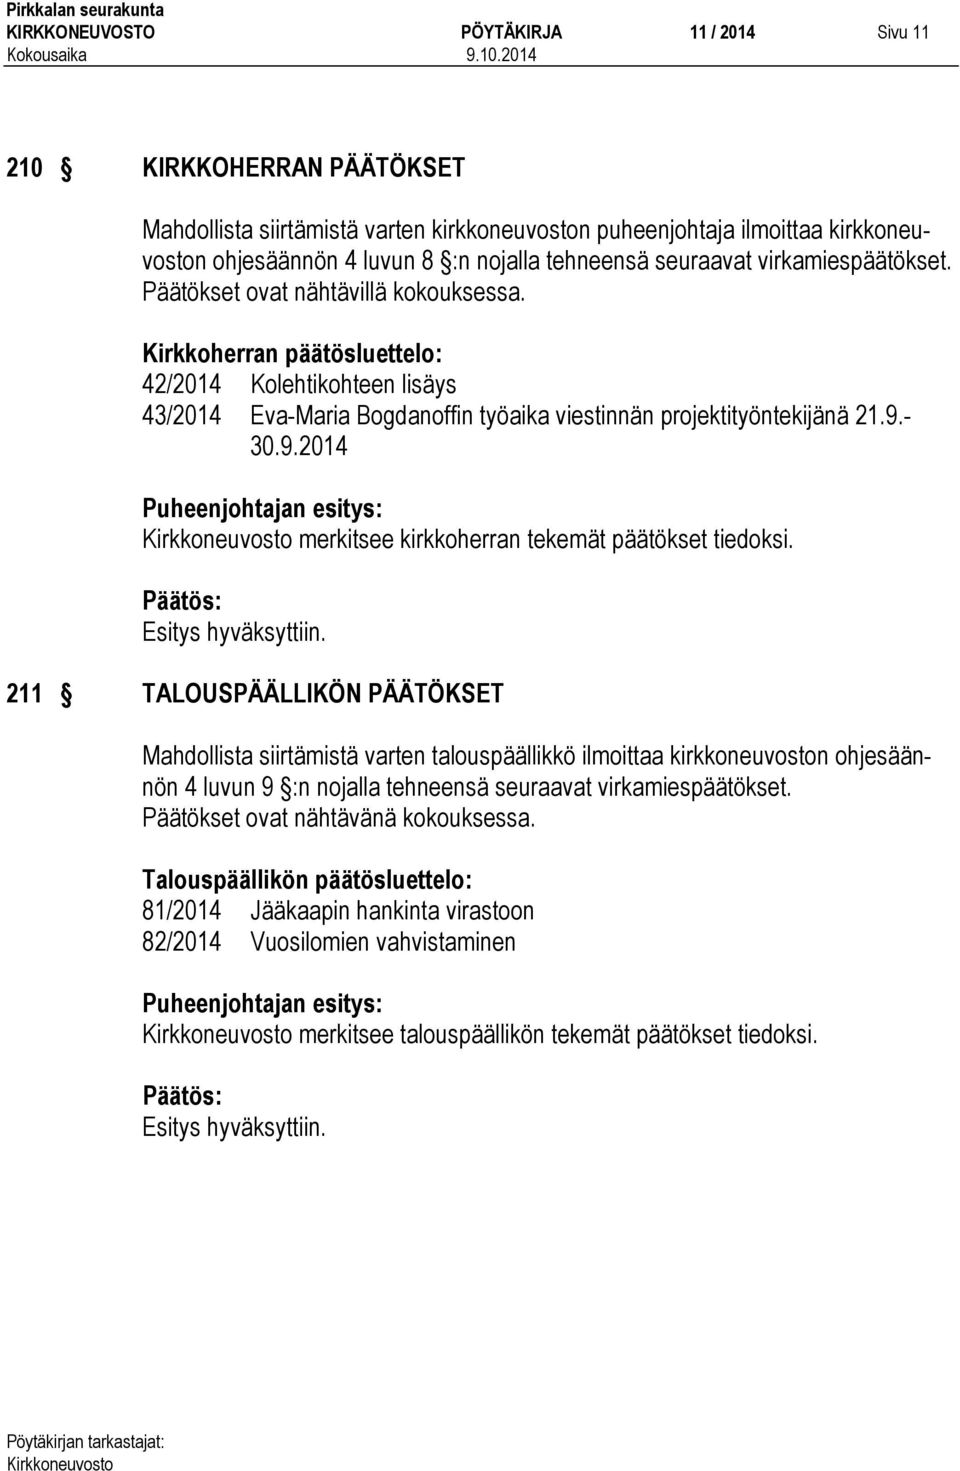 Kirkkoherran päätösluettelo: 42/2014 Kolehtikohteen lisäys 43/2014 Eva-Maria Bogdanoffin työaika viestinnän projektityöntekijänä 21.9.- 30.9.2014 merkitsee kirkkoherran tekemät päätökset tiedoksi.